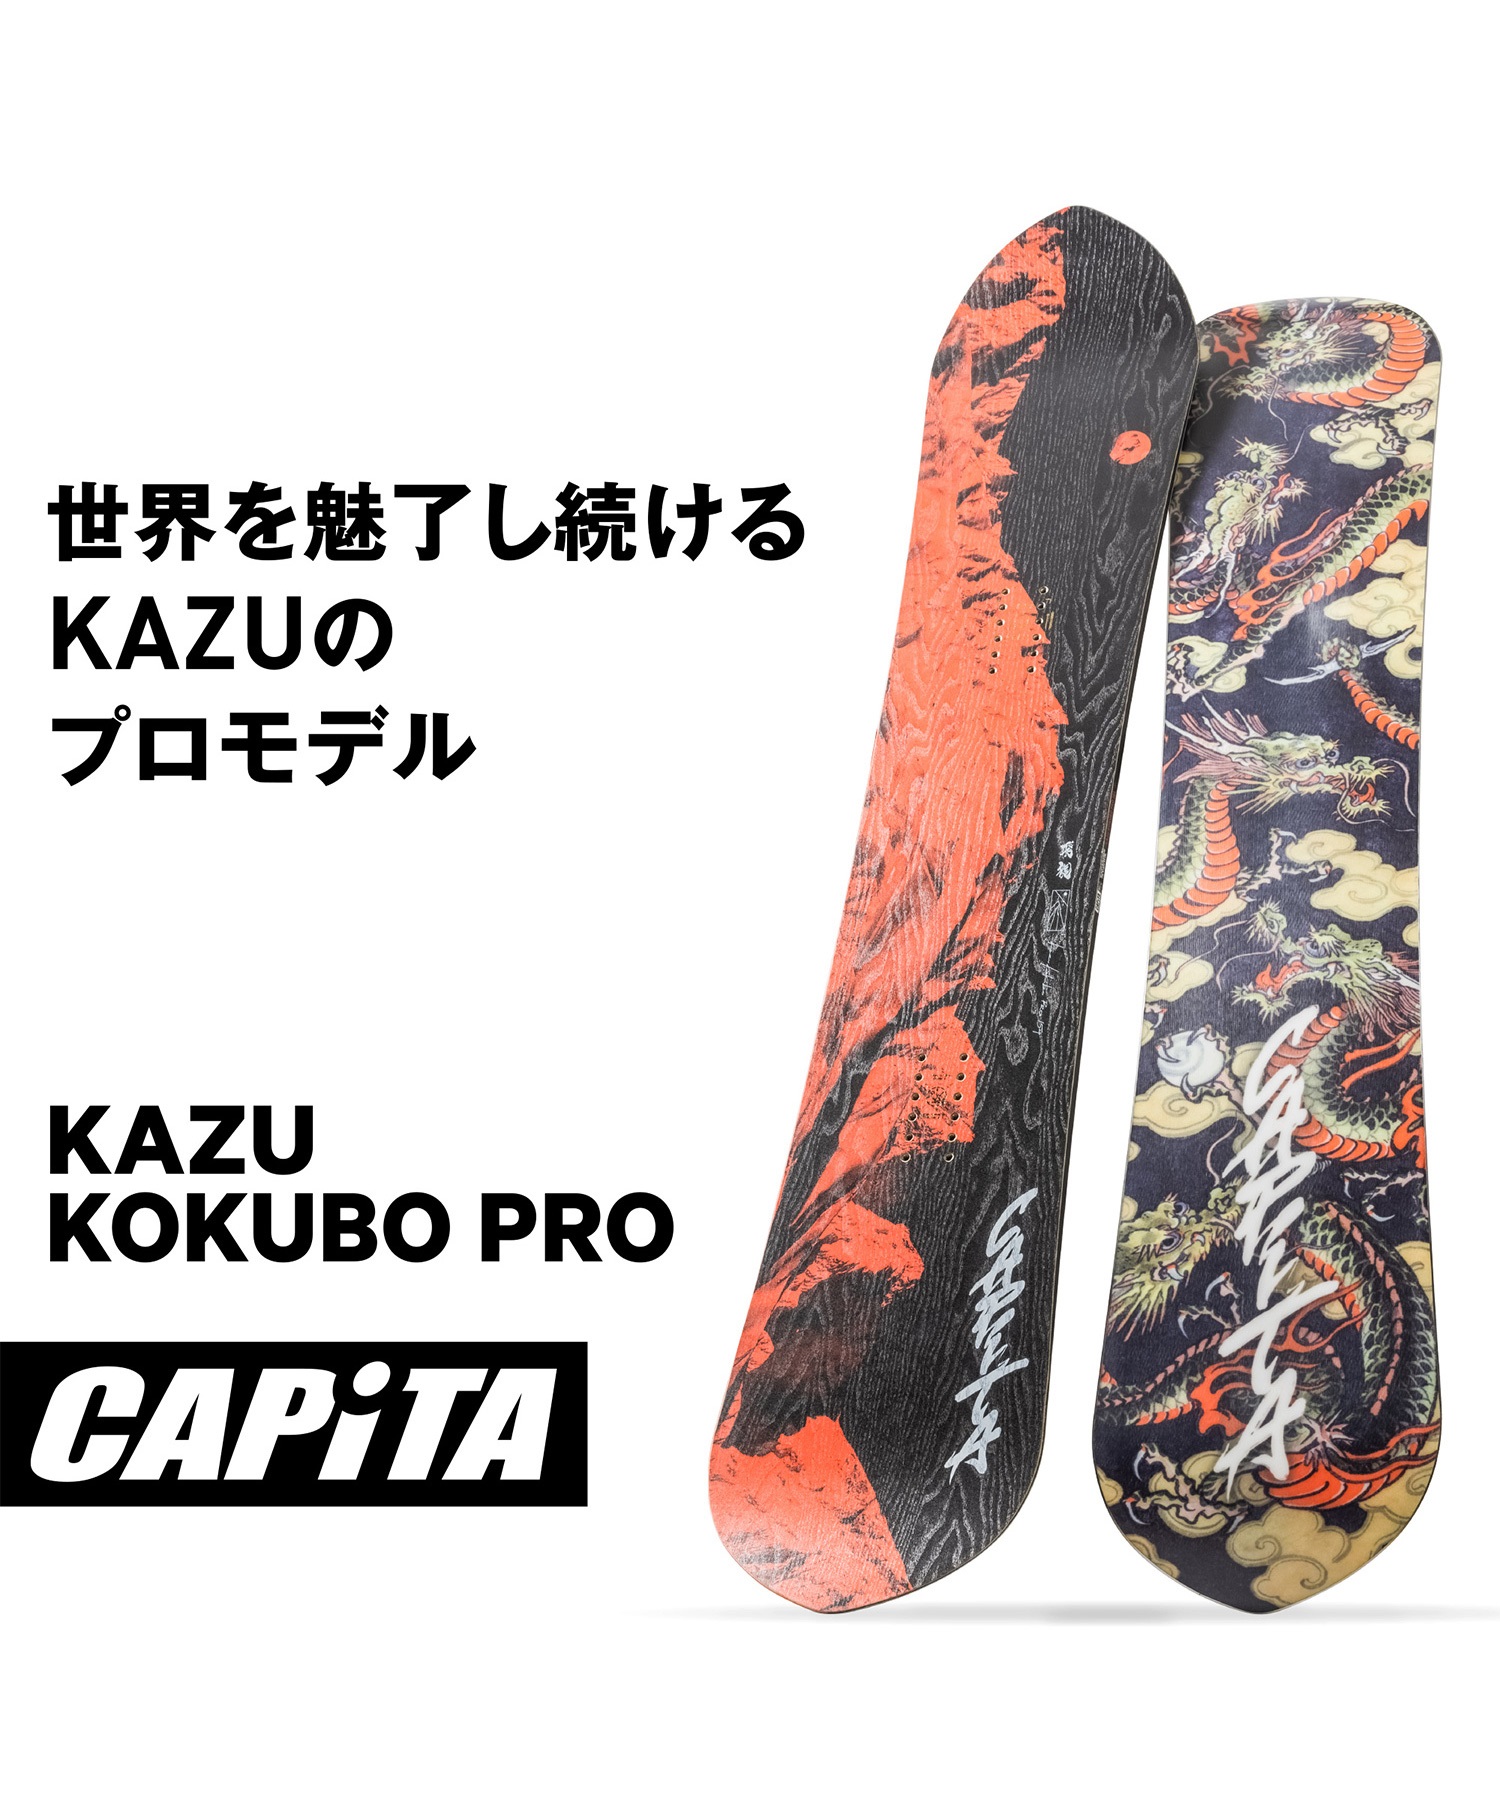 23-24 CAPITA KAZU KOKUBO PRO 157cmスノーボード